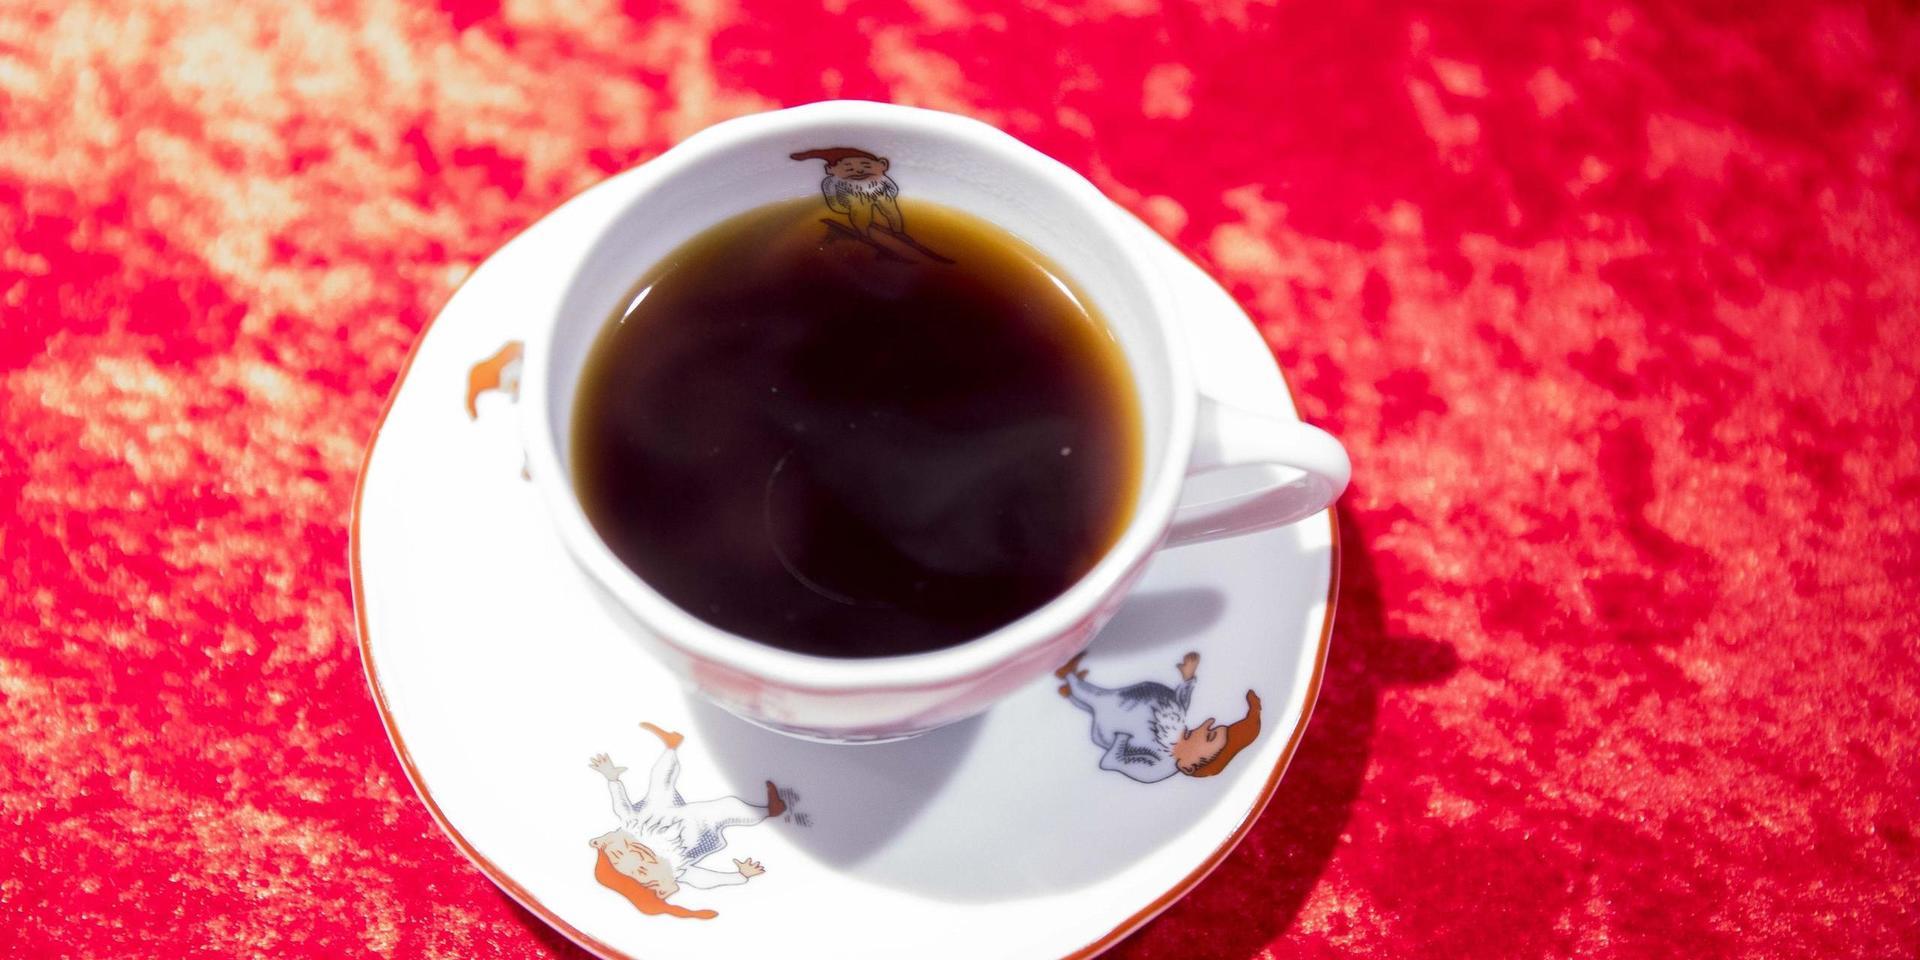 Bly i kaffefiltren tyder visst på dålig råvara, anser insändarskribenten.